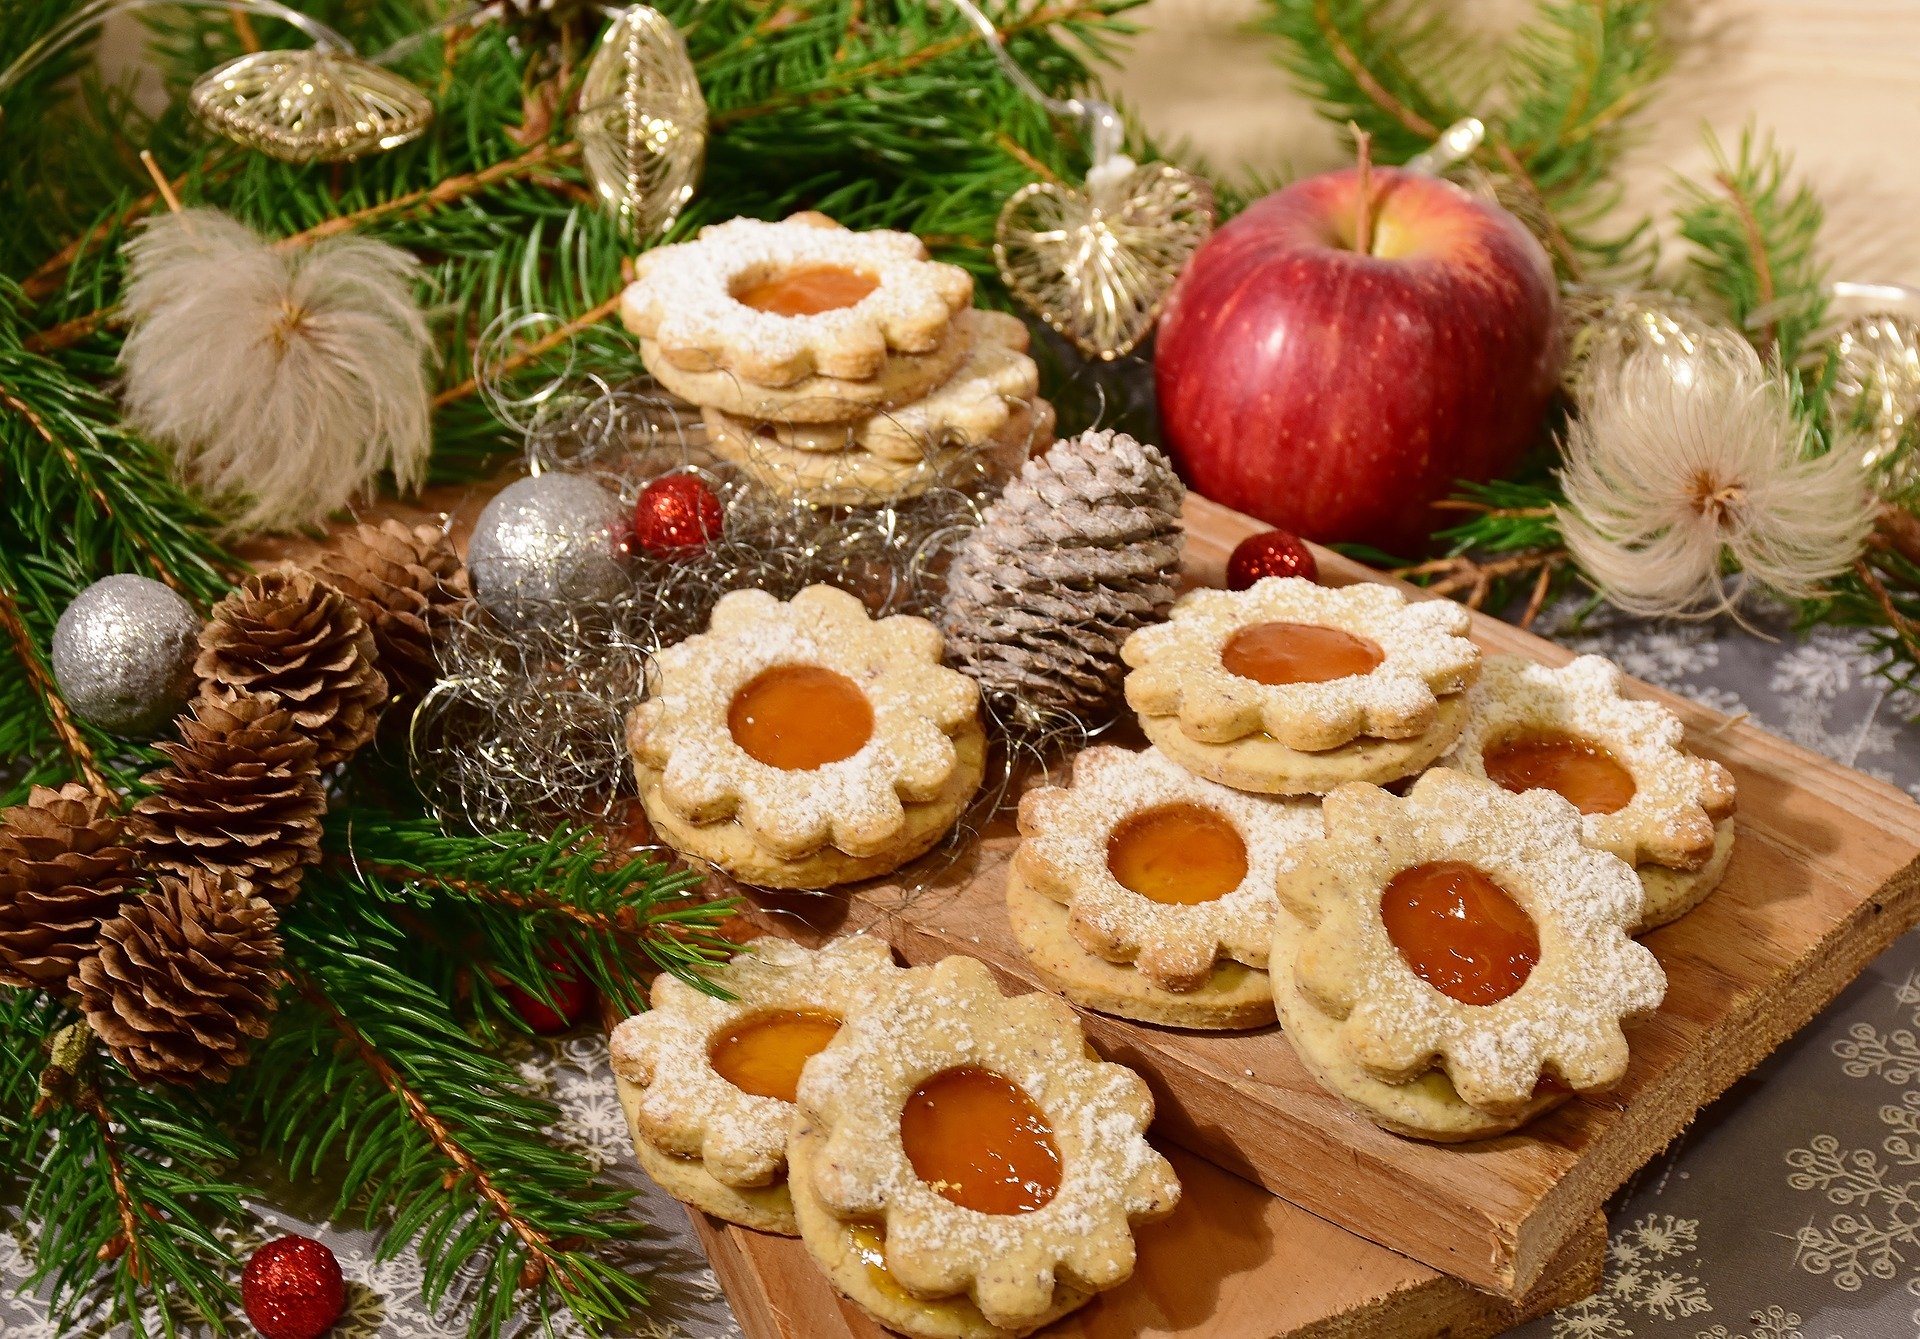 Weihnachtsplätzchen nett dekoriert auf einem Brett zwischen Tannenzweigen, tannenzapfen und einem Apfel